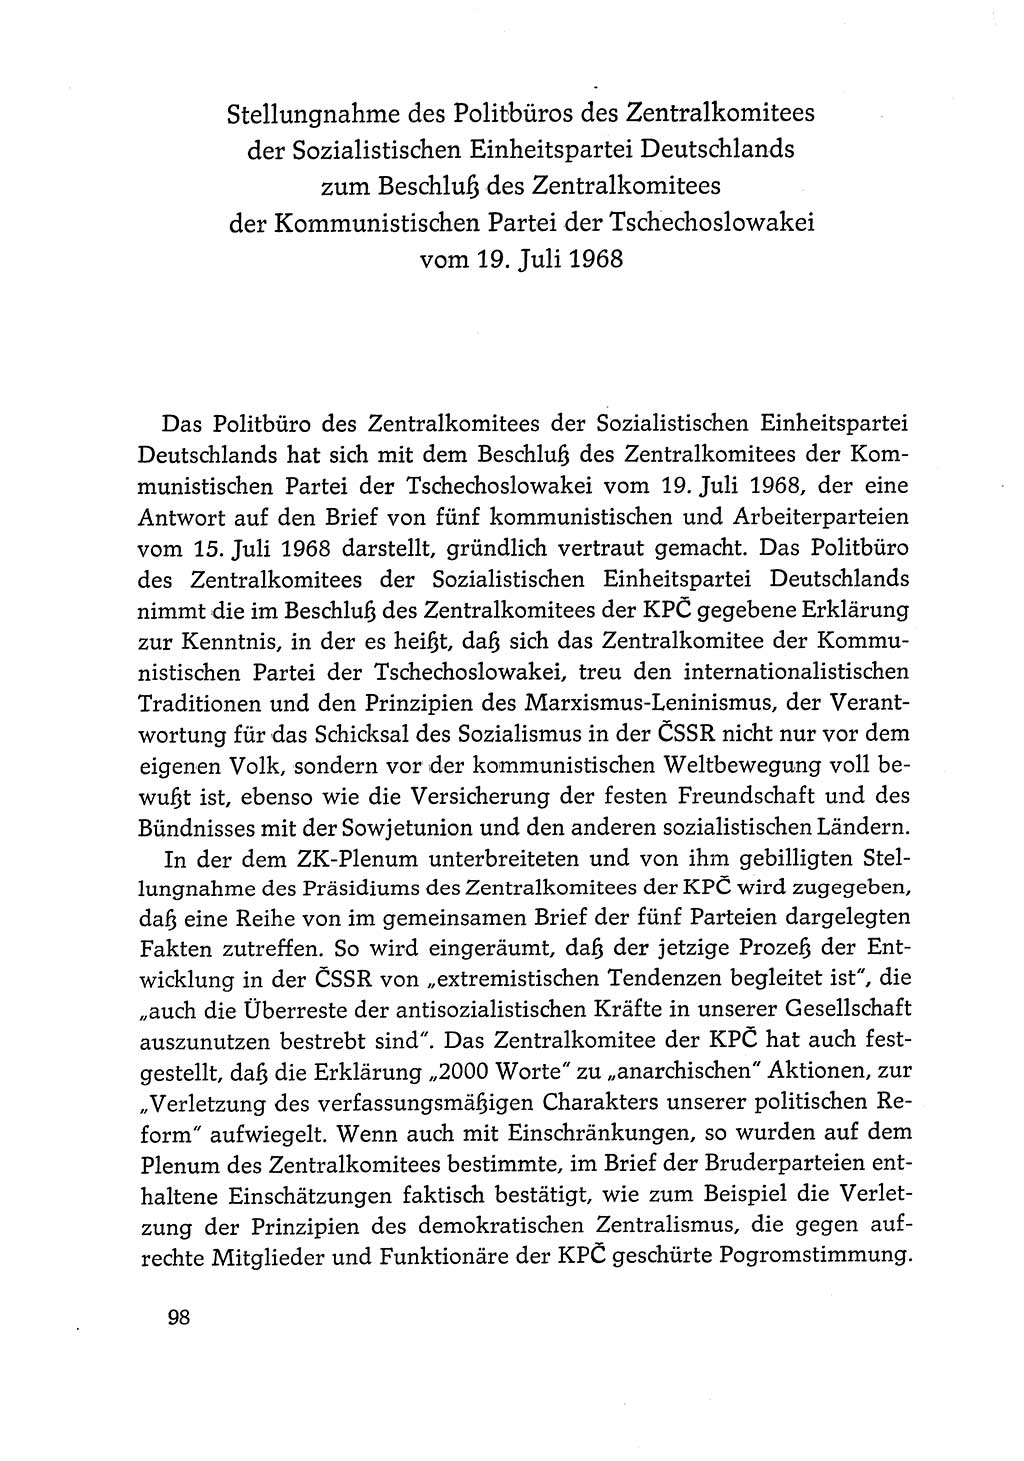 Dokumente der Sozialistischen Einheitspartei Deutschlands (SED) [Deutsche Demokratische Republik (DDR)] 1968-1969, Seite 98 (Dok. SED DDR 1968-1969, S. 98)